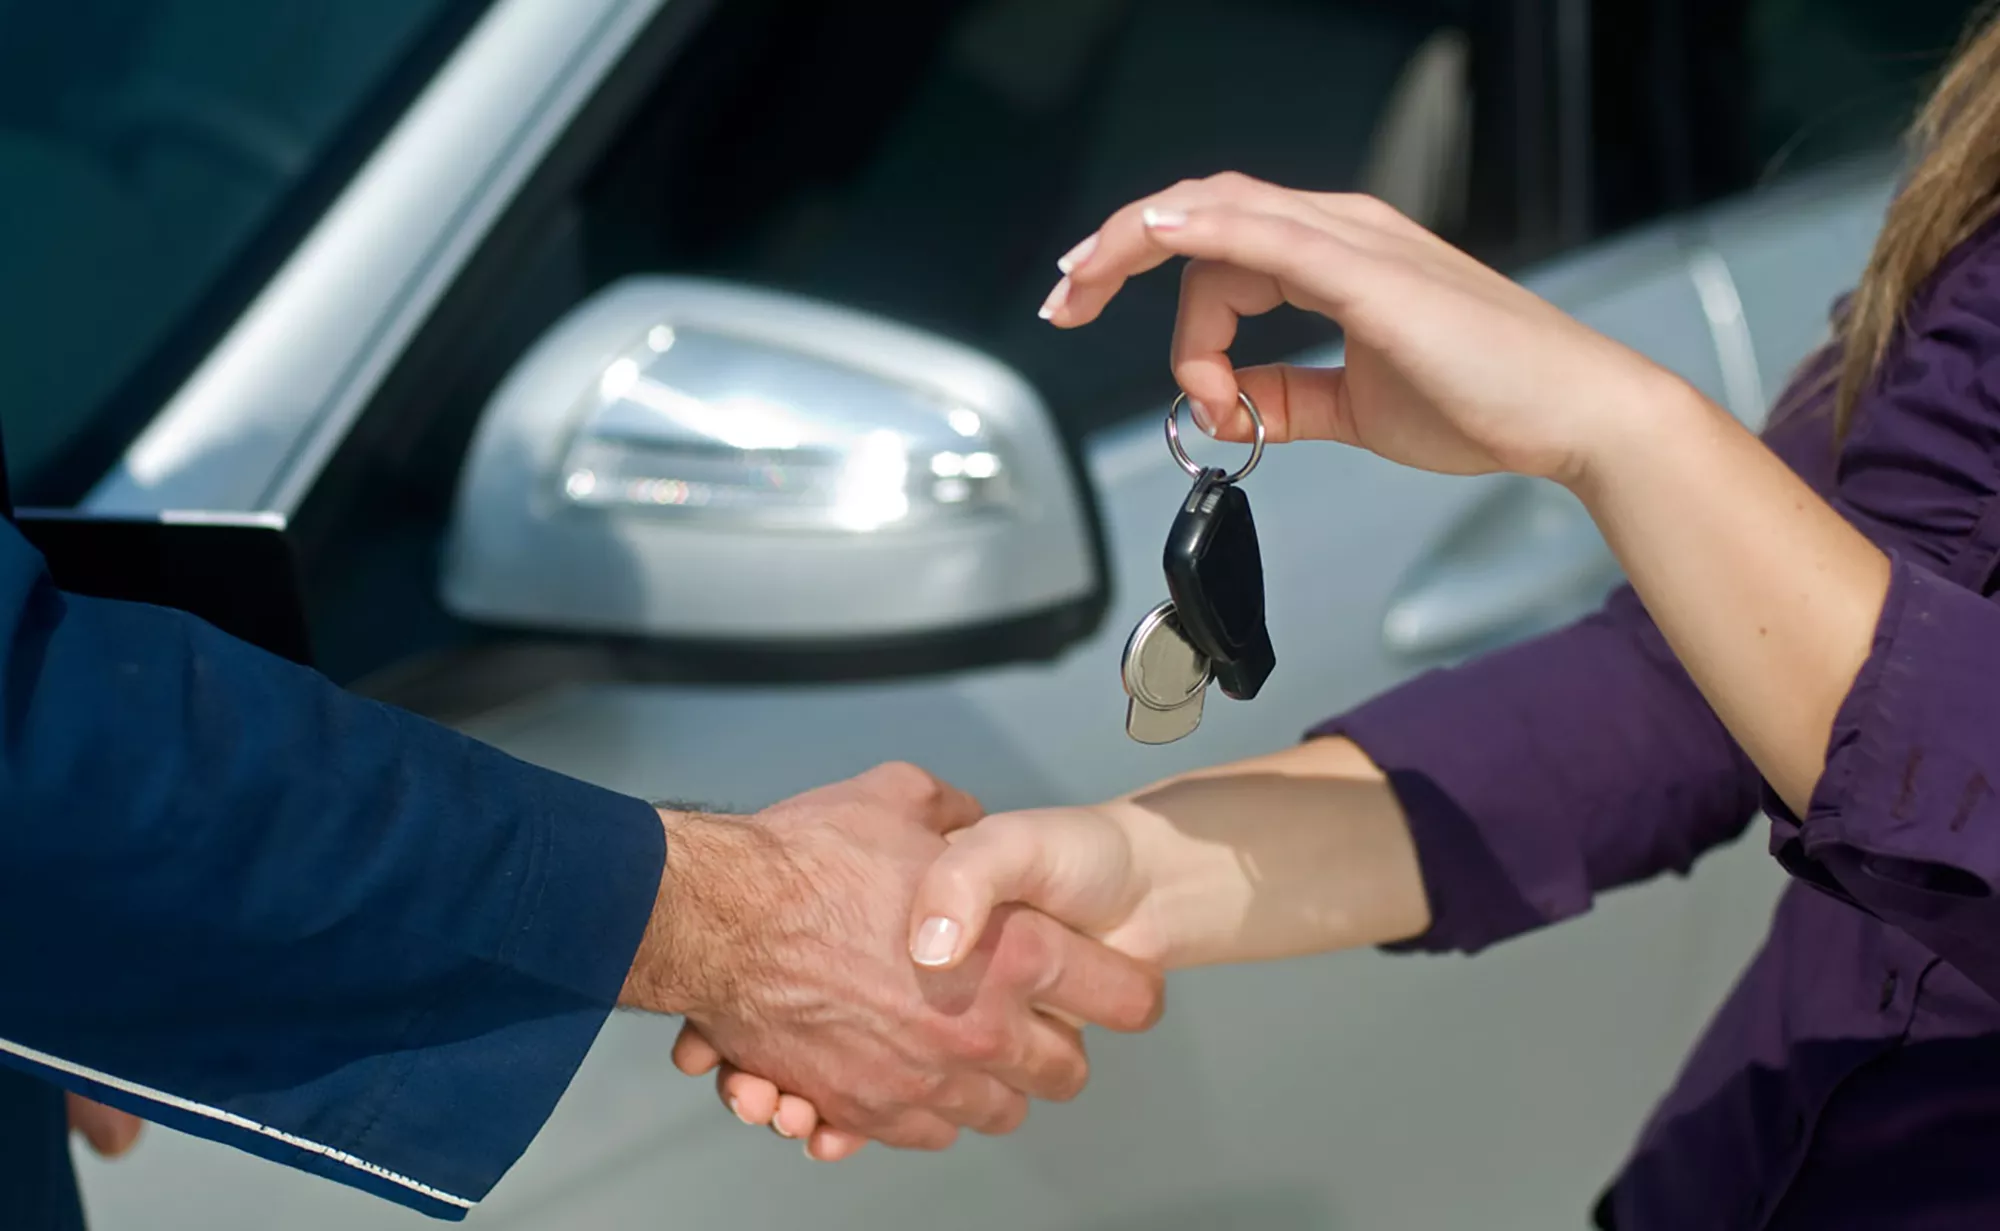 Vender tu coche es más fácil si sigues ciertos trucos que lo harán más atractivo de cara a posibles compradores.